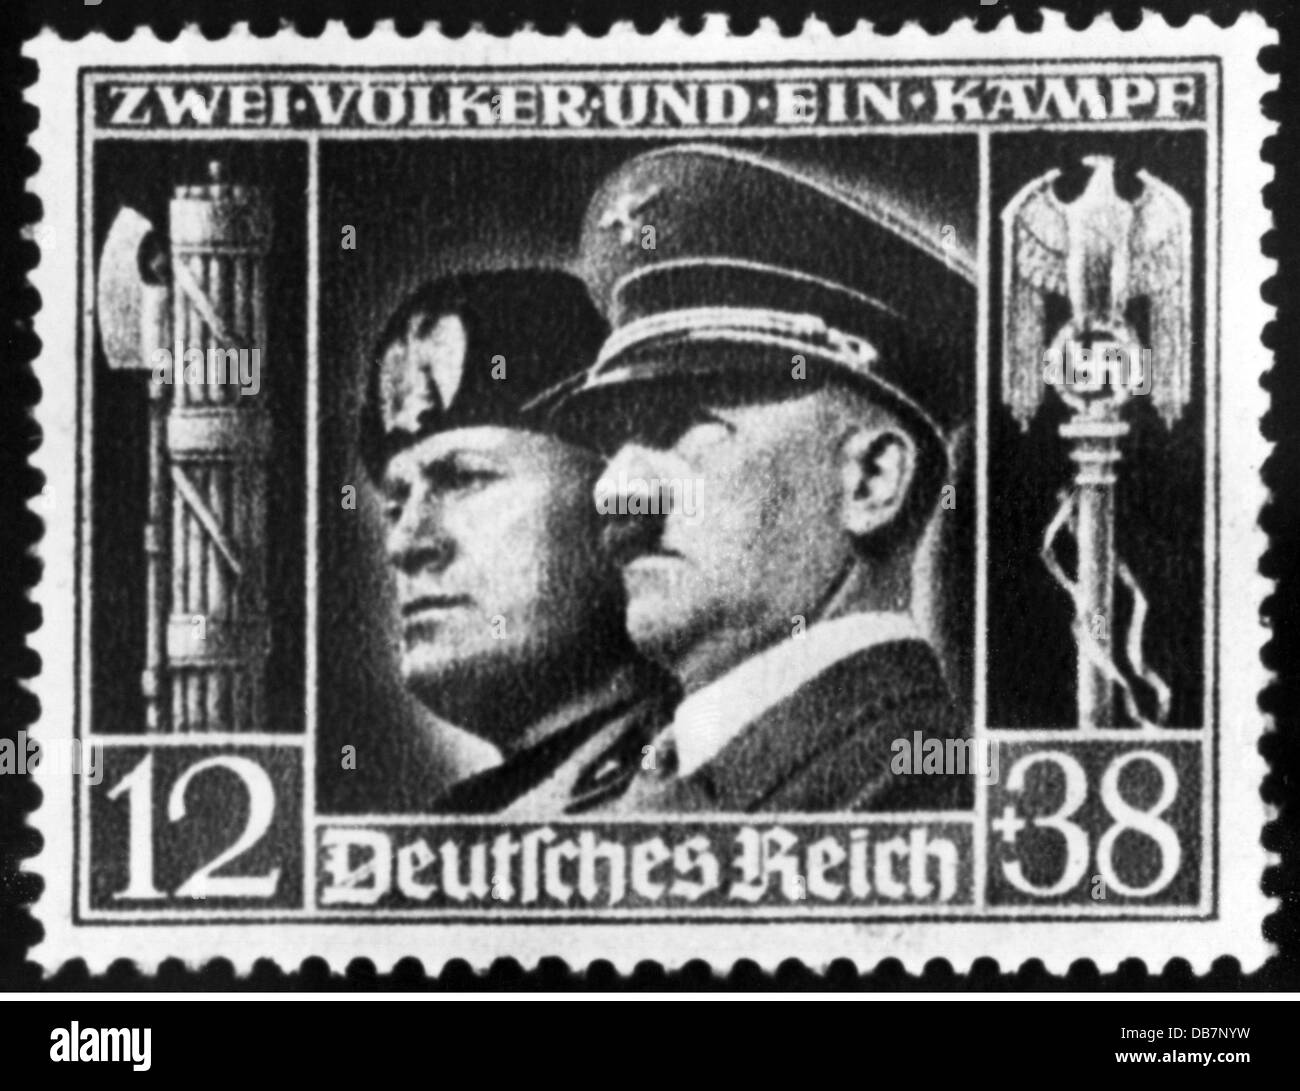 Postsendungen, Briefmarken, Deutschland, 12 + 38 Pfennig Sonderheft, 1941, Zusatz-Rechte-Clearenzen-nicht vorhanden Stockfoto